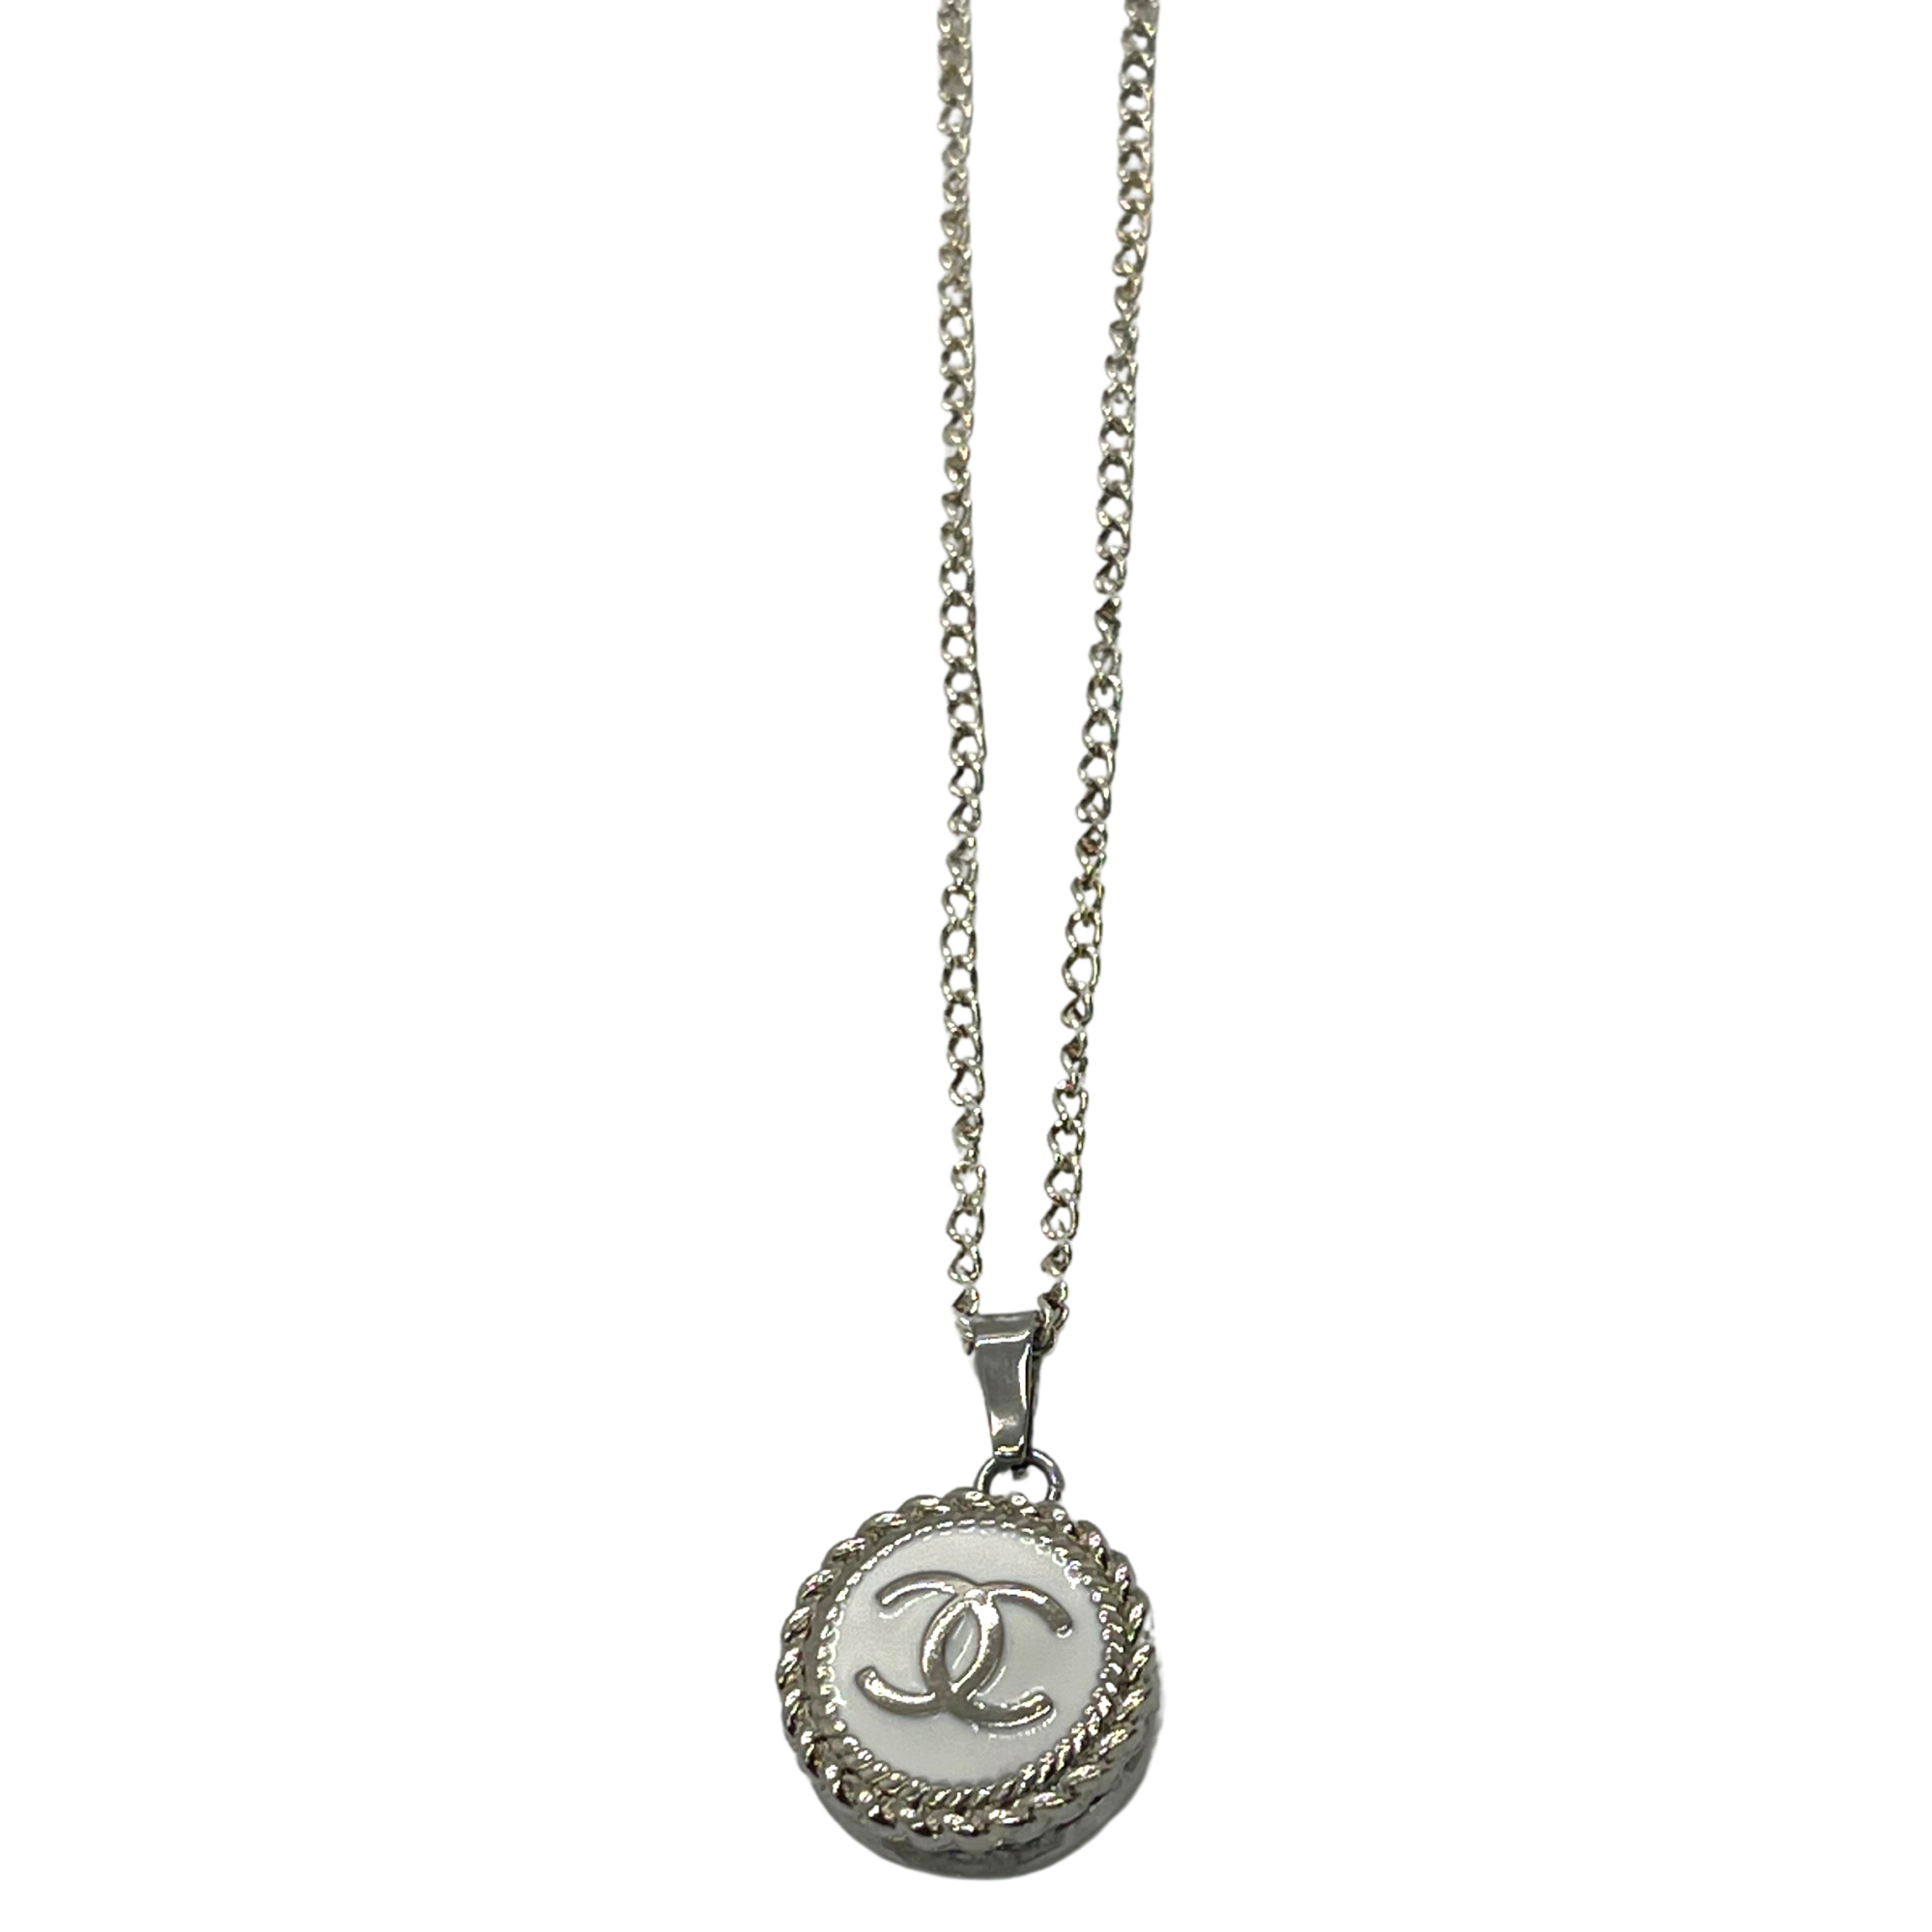 Mua Dây Chuyền Chanel Necklace Pendant CC Mark Strass Silver Black Crystal  Double Chain Màu Bạc  Chanel  Mua tại Vua Hàng Hiệu h068343